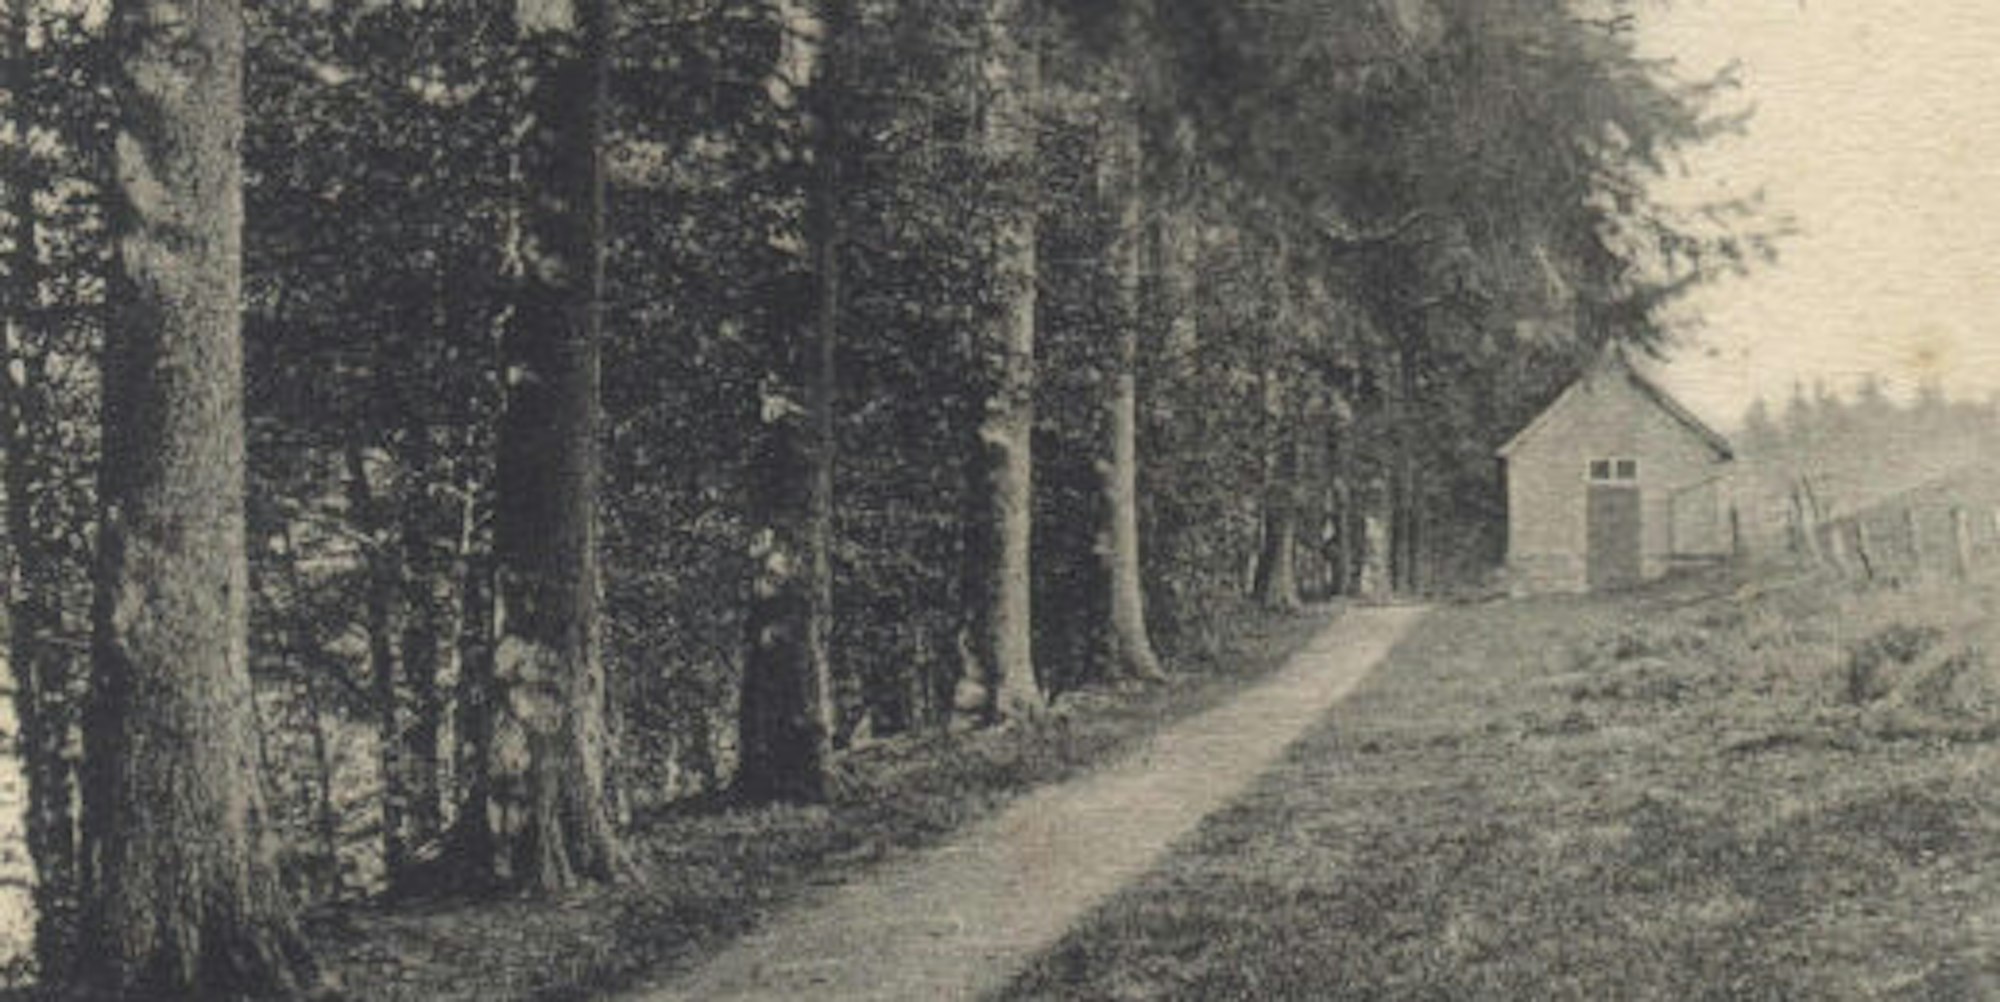 „Promenadenweg“, so wird diese Straße in Ohl auf einer Postkarte aus dem Jahr 1910 bezeichnet. Wie heißt sie heute?